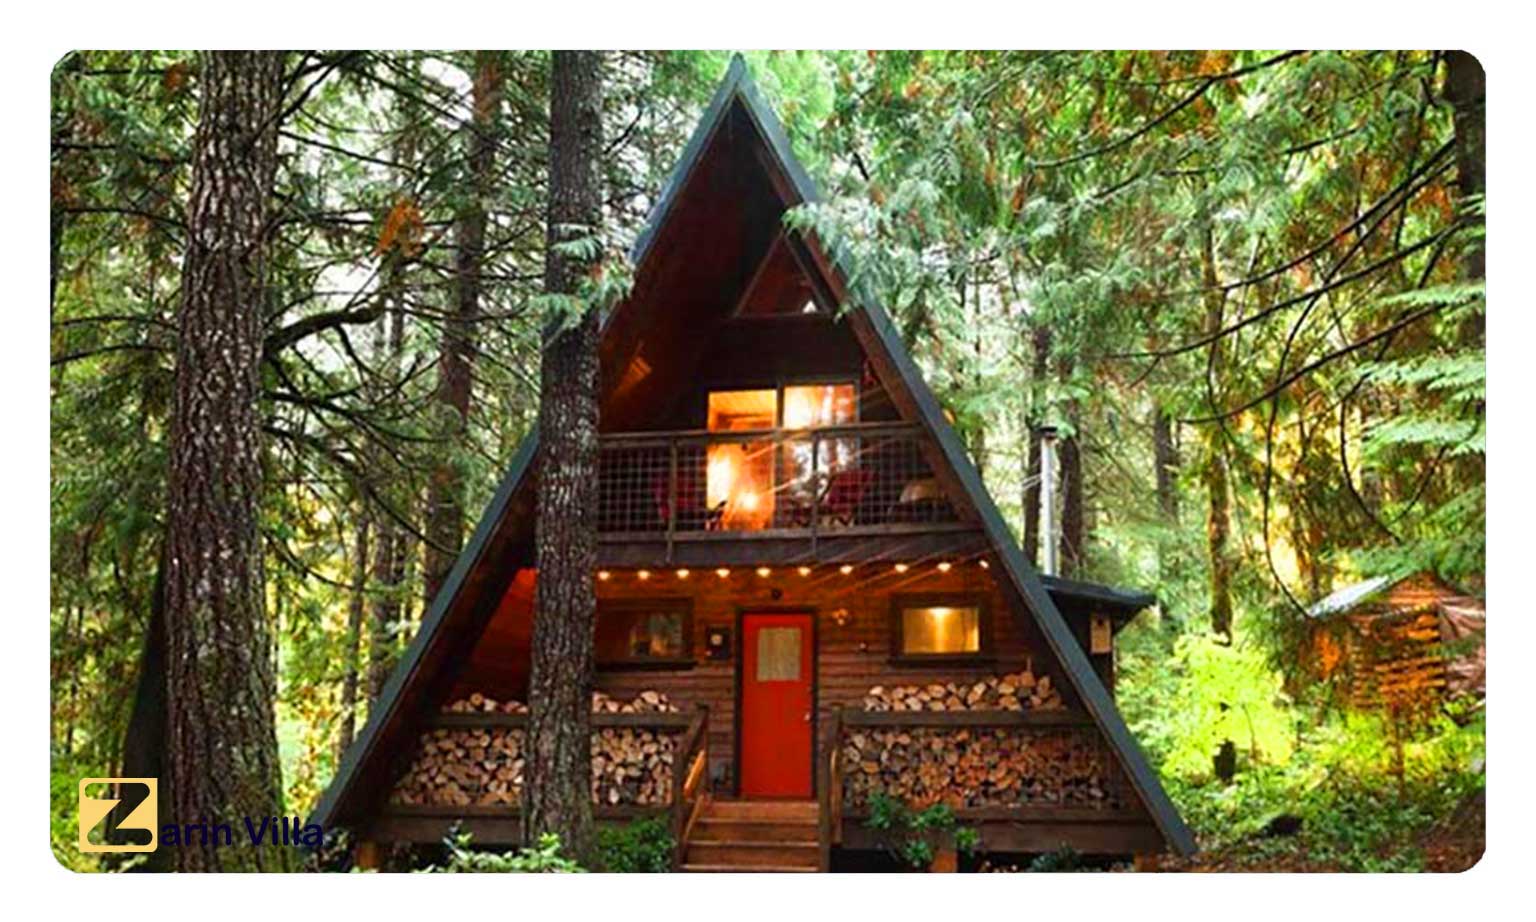 Triangular wooden villa